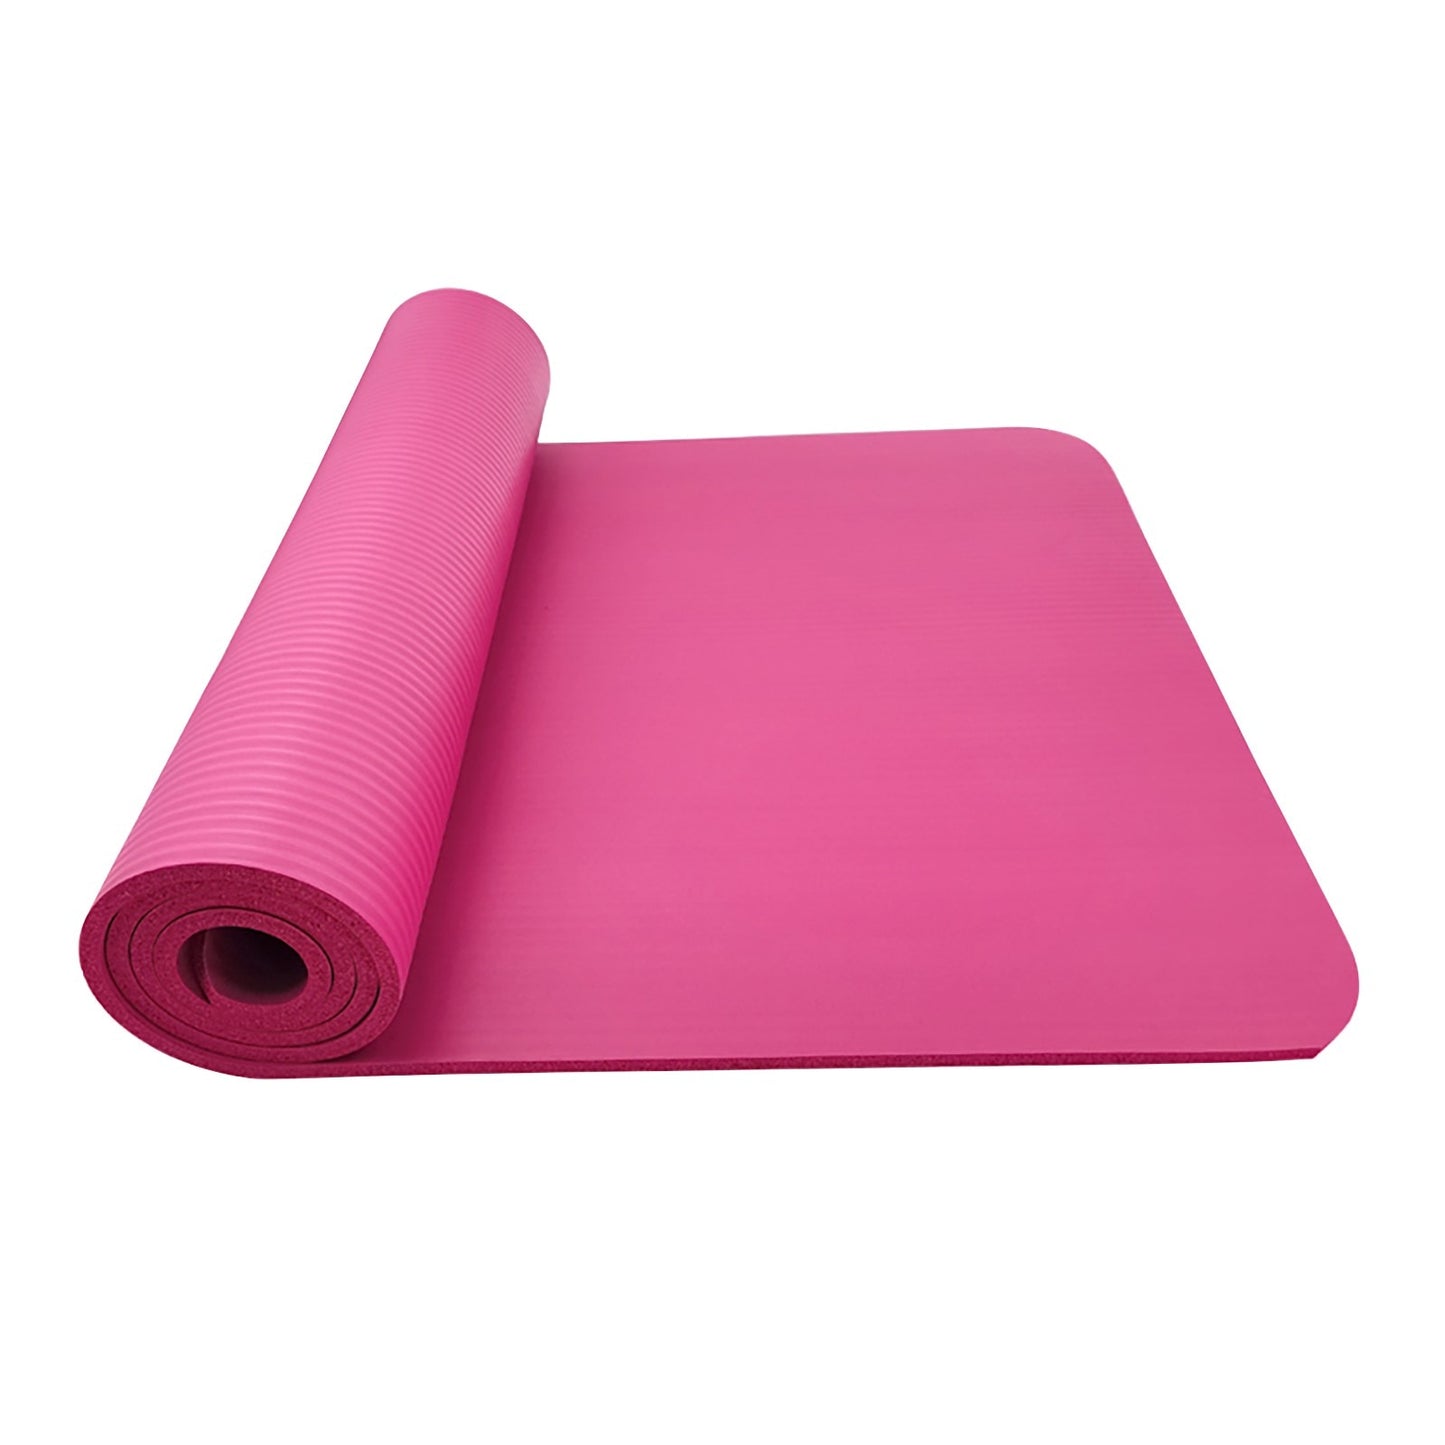 Large Size Anti Slip Yoga Fitness Mat